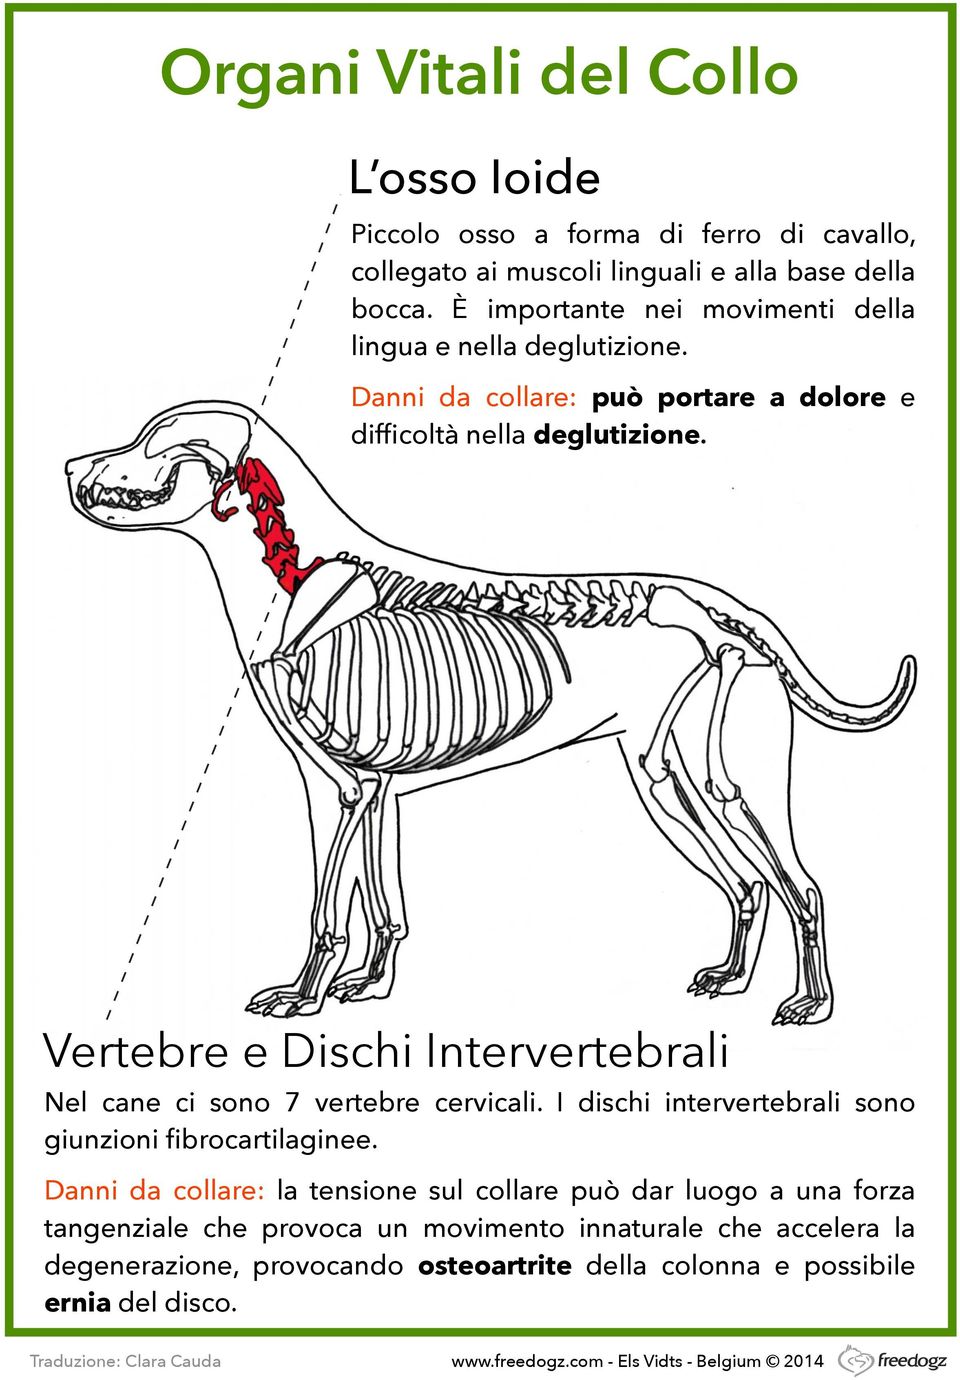 Vertebre e Dischi Intervertebrali Nel cane ci sono 7 vertebre cervicali. I dischi intervertebrali sono giunzioni fibrocartilaginee.